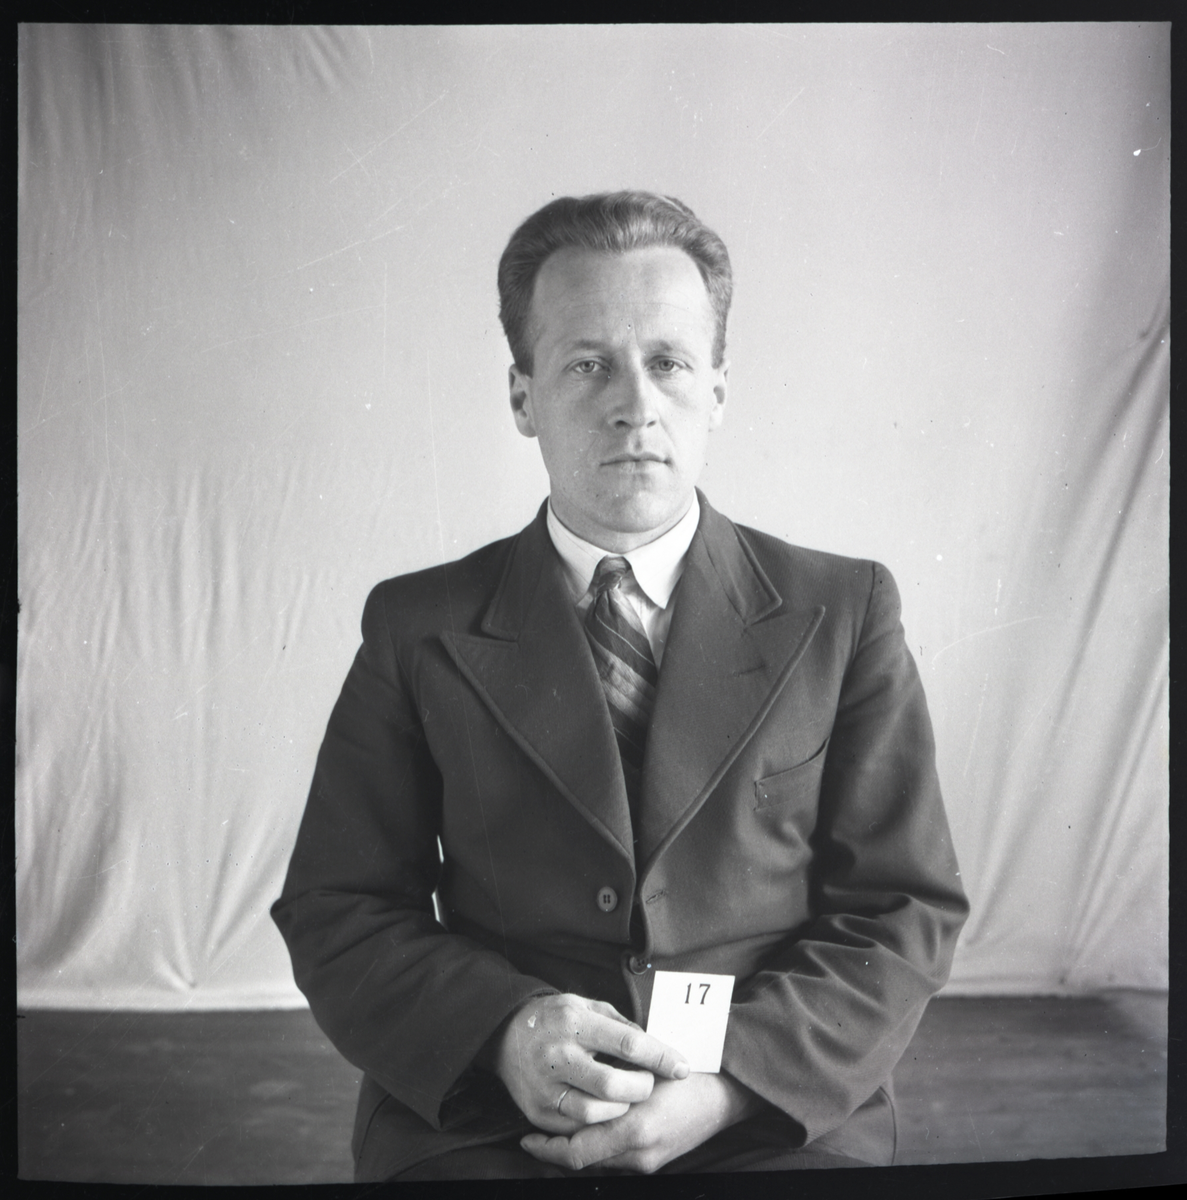 Klassefoto av elev Oddmund Jøssvoll som gikk på Skiensfjordens tekniske fagskole i Porsgrunn. Han er identifisert basert på skolefoto TGM-B.31977.L7.059

Negativ ble opprinnelig oppbevart i en eske med påskrift: Porsgrunns Tekniker 1942-43.